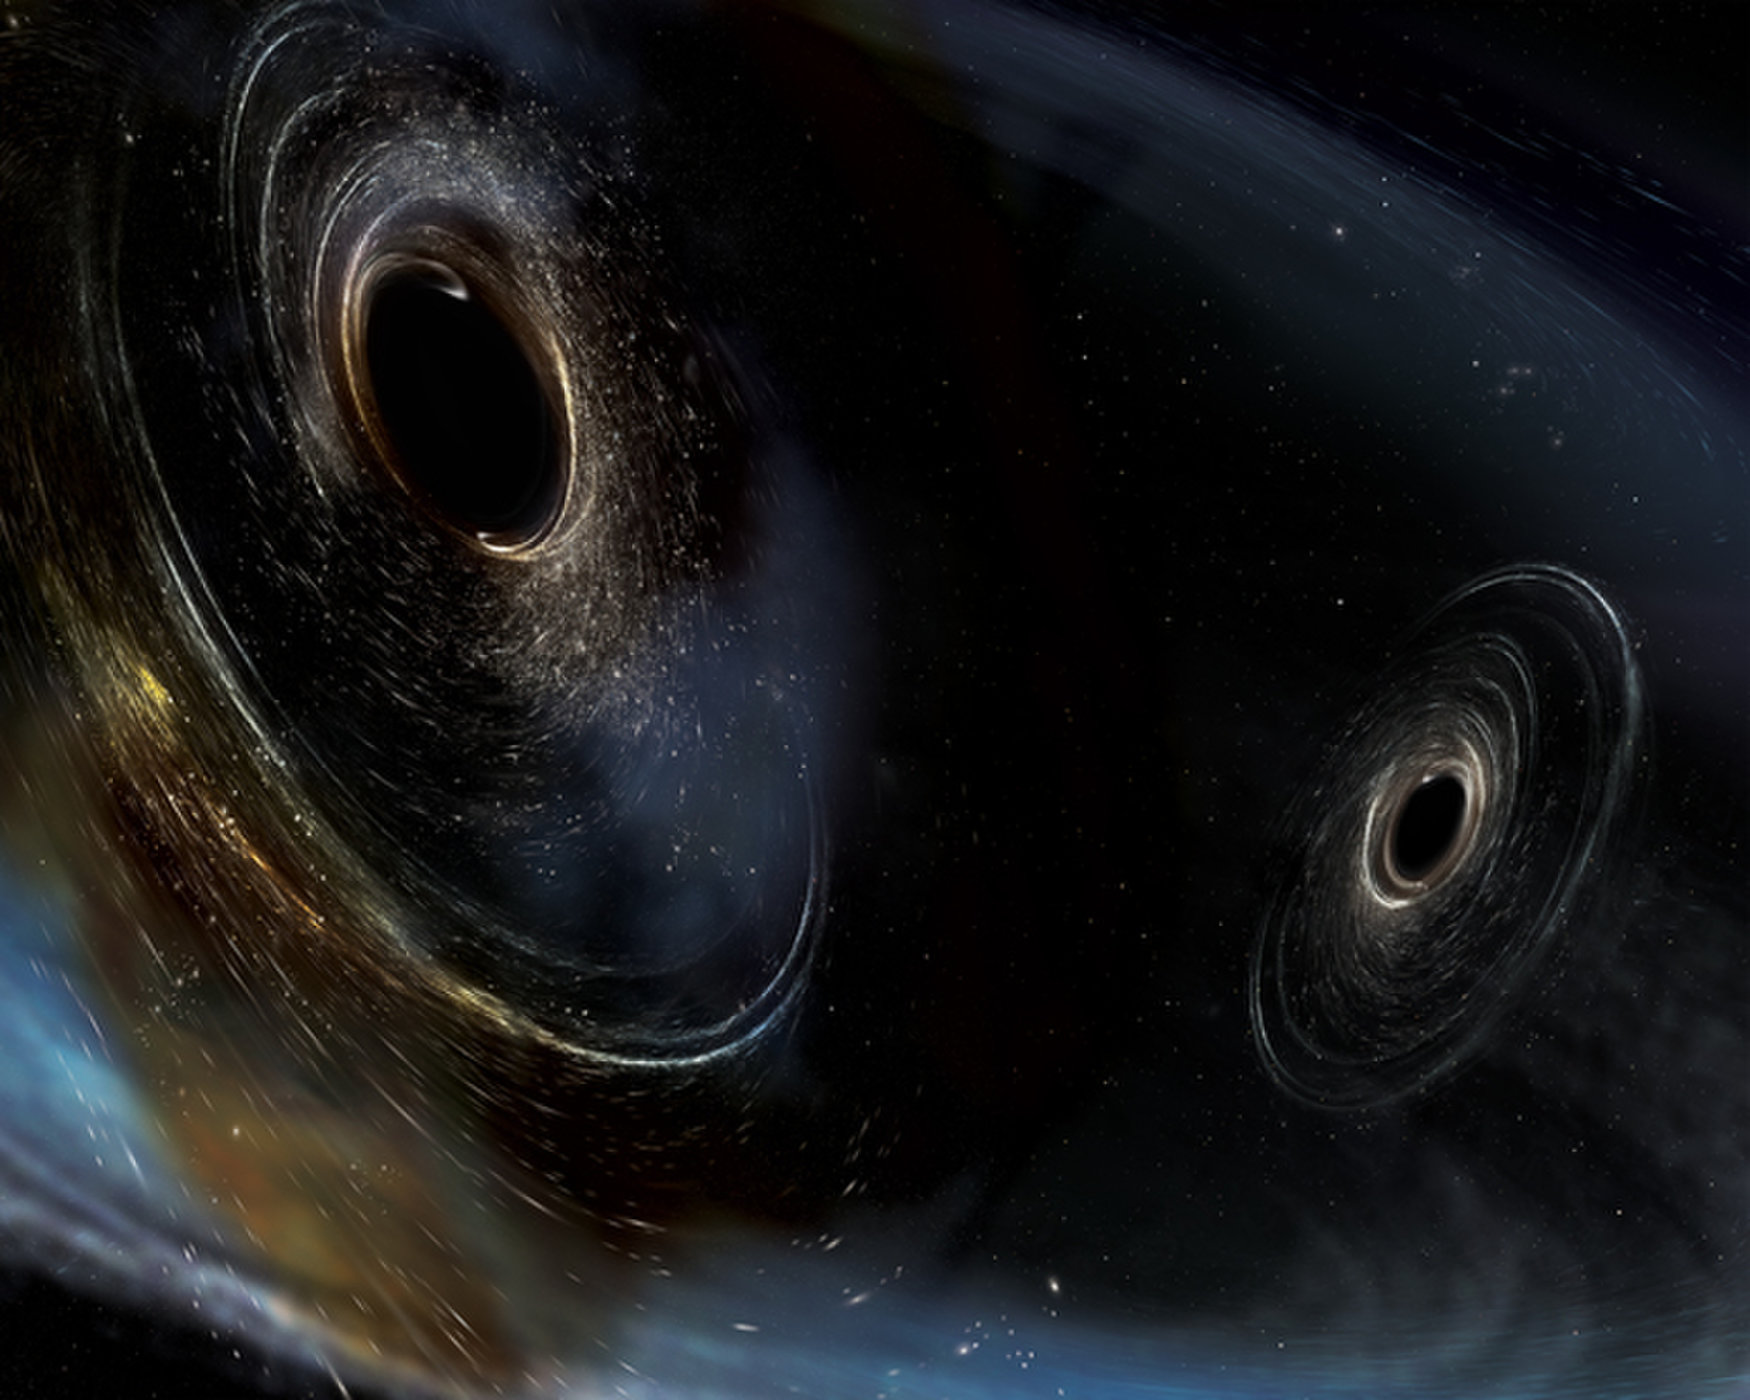 ภาพในจินตนาการของศิลปิน <wbr>แสดงภาพของหลุมดำสองดวงกำลังชนกัน <wbr><br />
<br />
